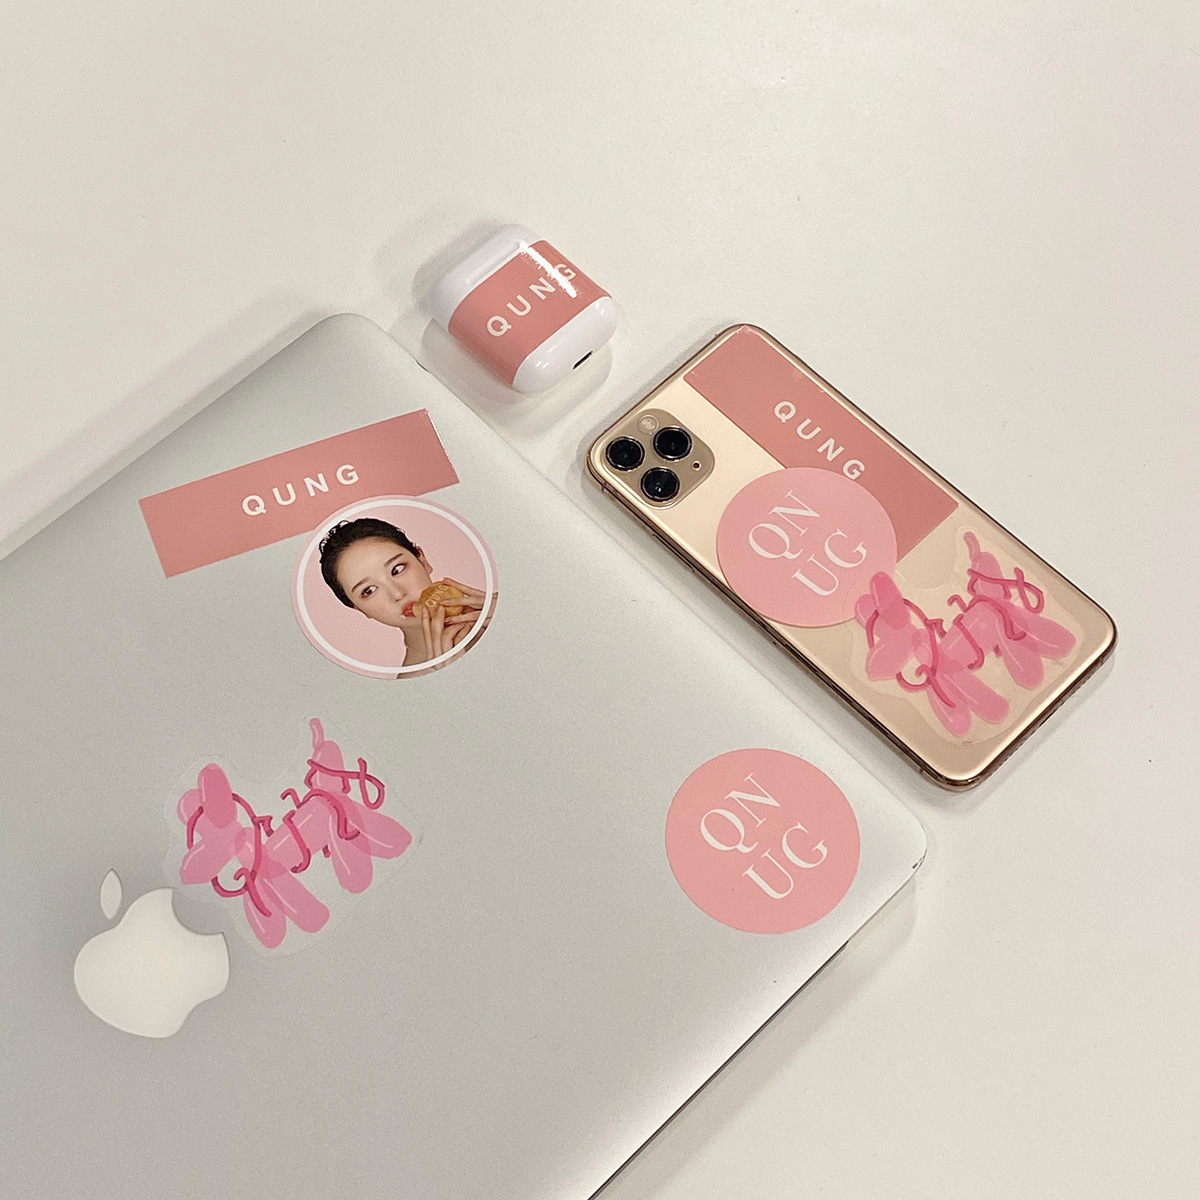 クン QUNG 2020 pink sticker set 